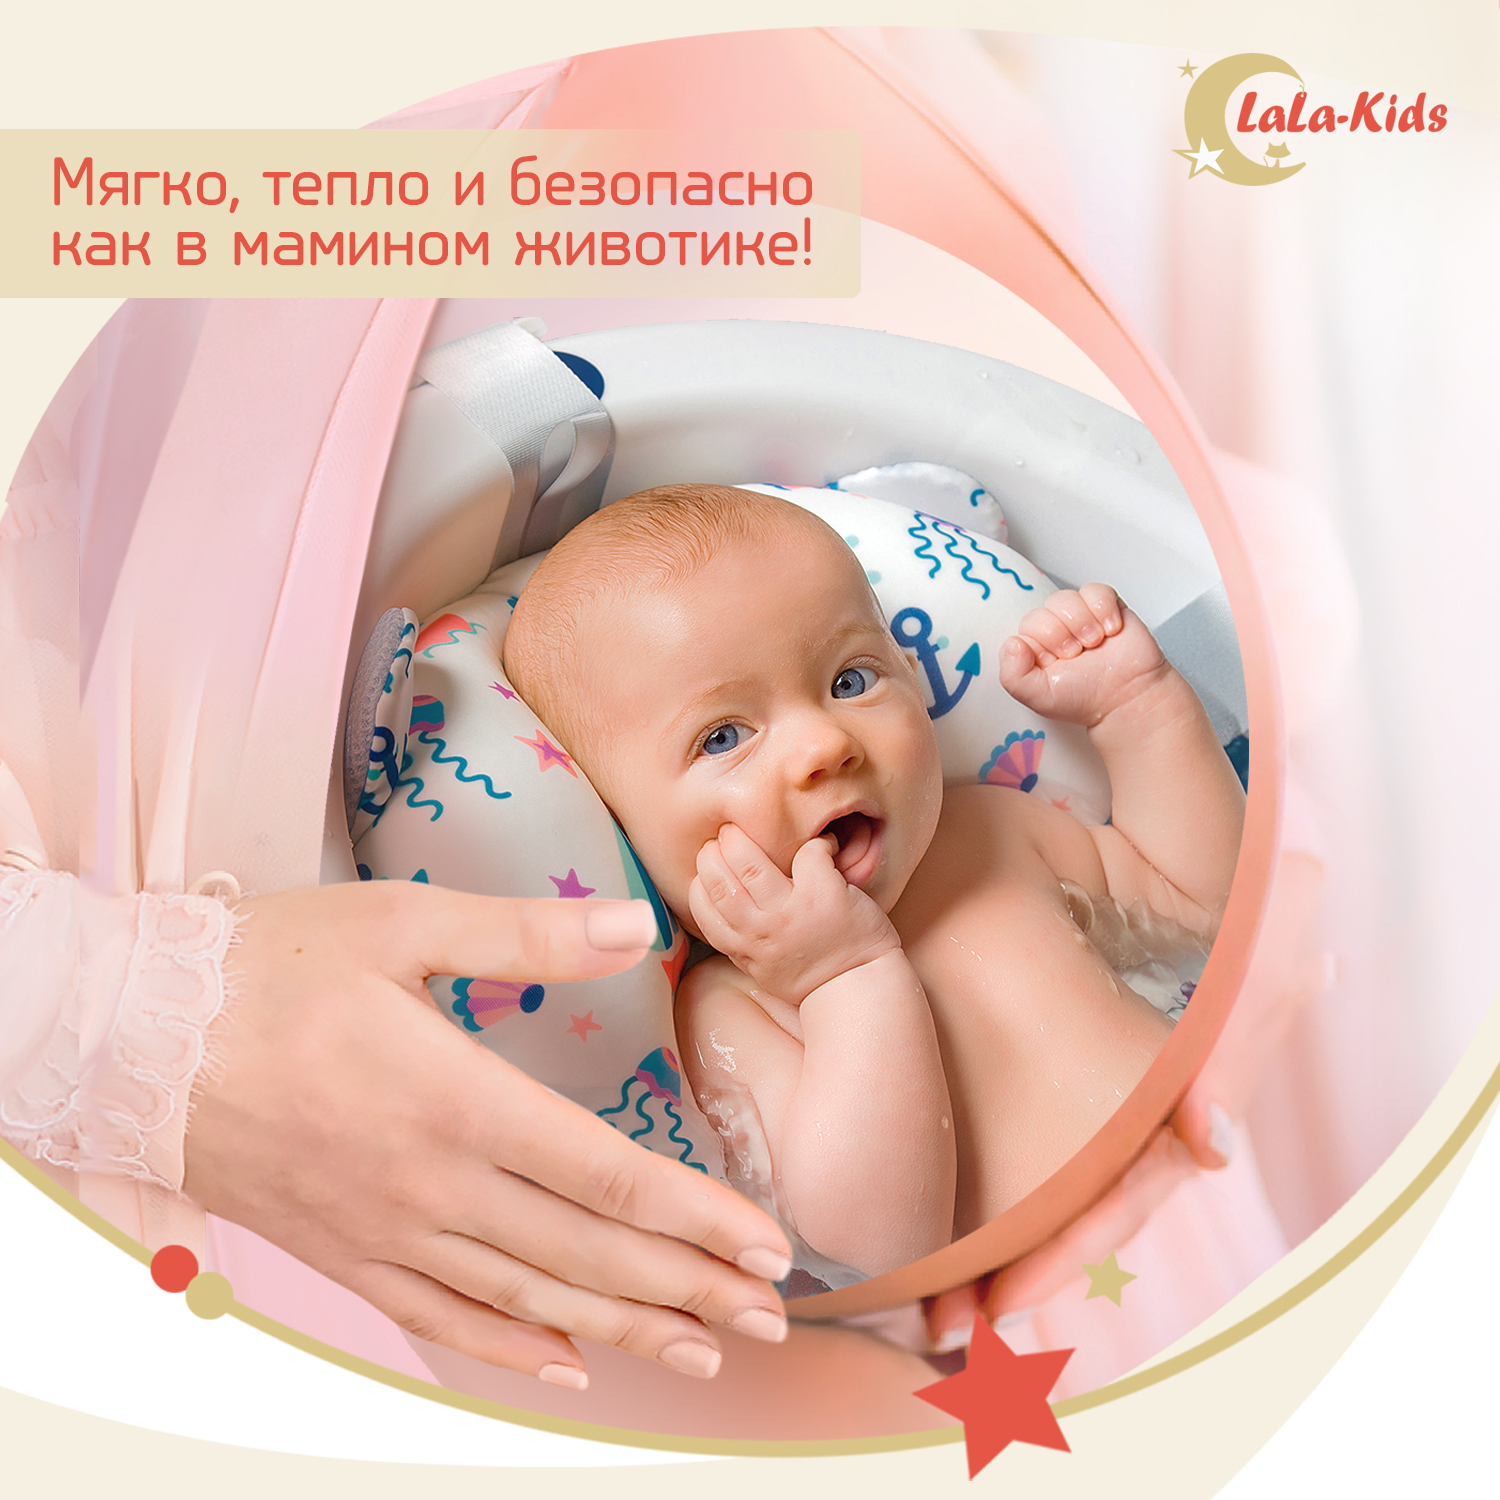 Ванночка для новорожденных LaLa-Kids складная с матрасиком ярко-голубым в комплекте - фото 13